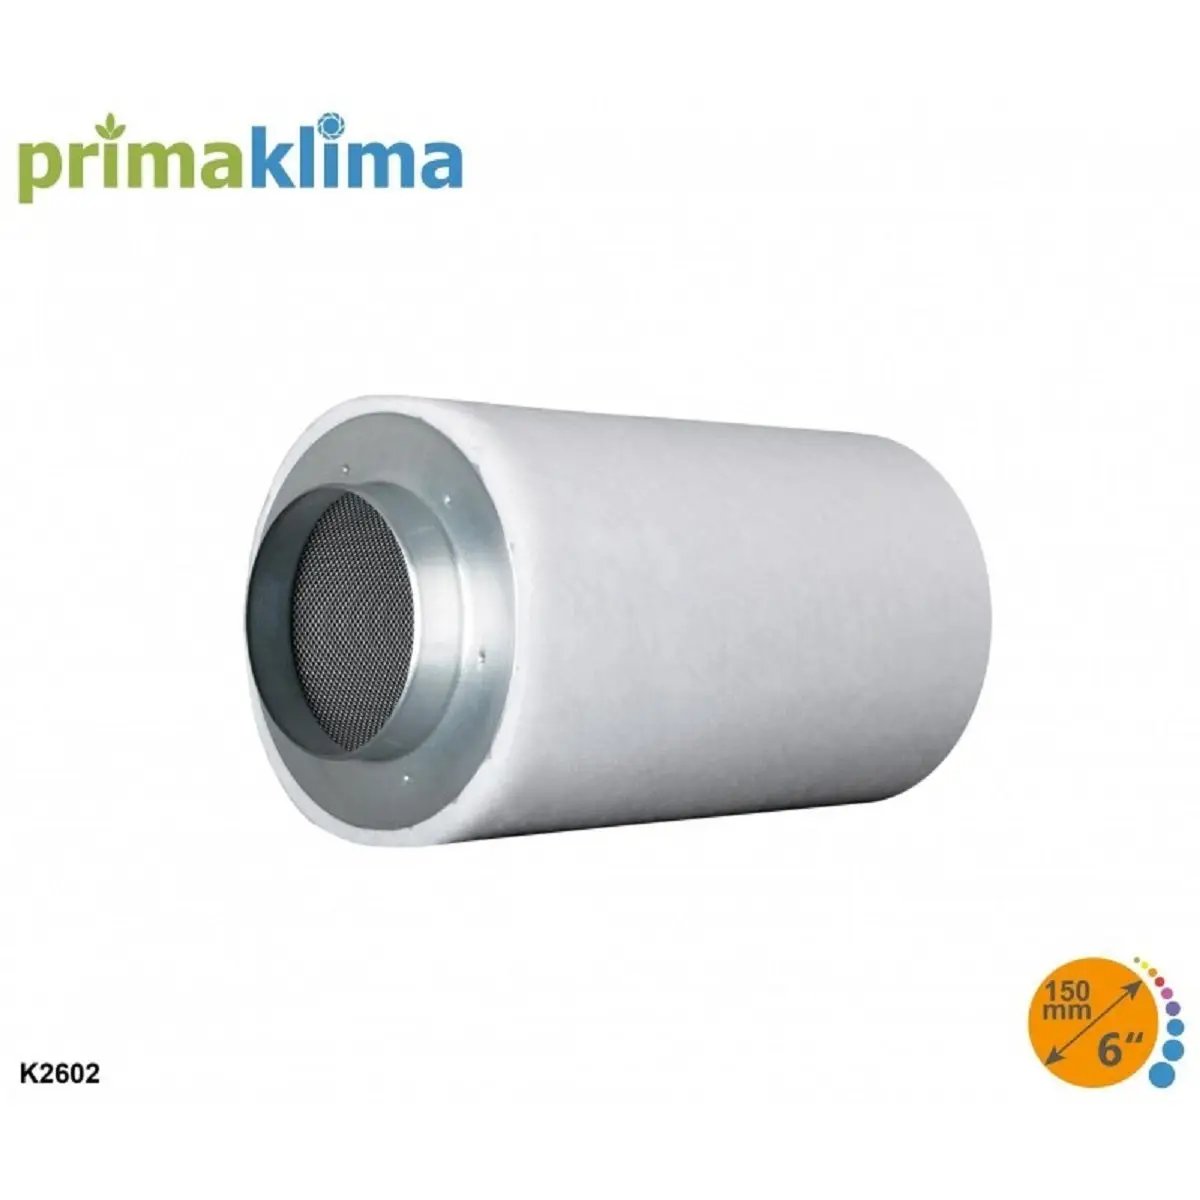 Filtre à charbon Prima Klima K2602 de 150mm de diamètre